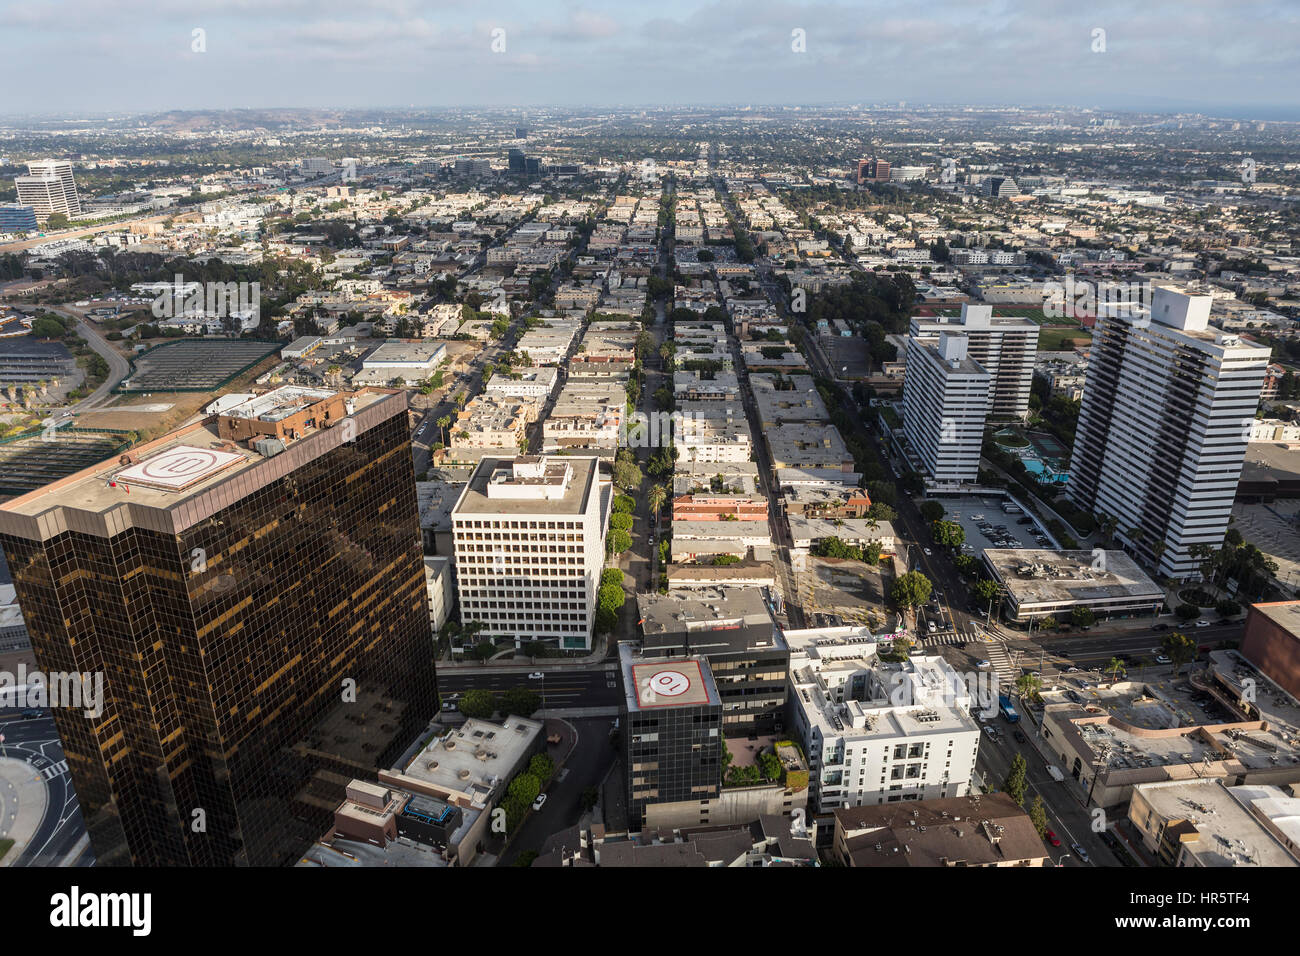 Los Angeles, Californie, USA - 6 août 2016 : Vue aérienne de l'architecture le long de Wilshire Blvd sur le côté ouest de Los Angeles. Banque D'Images